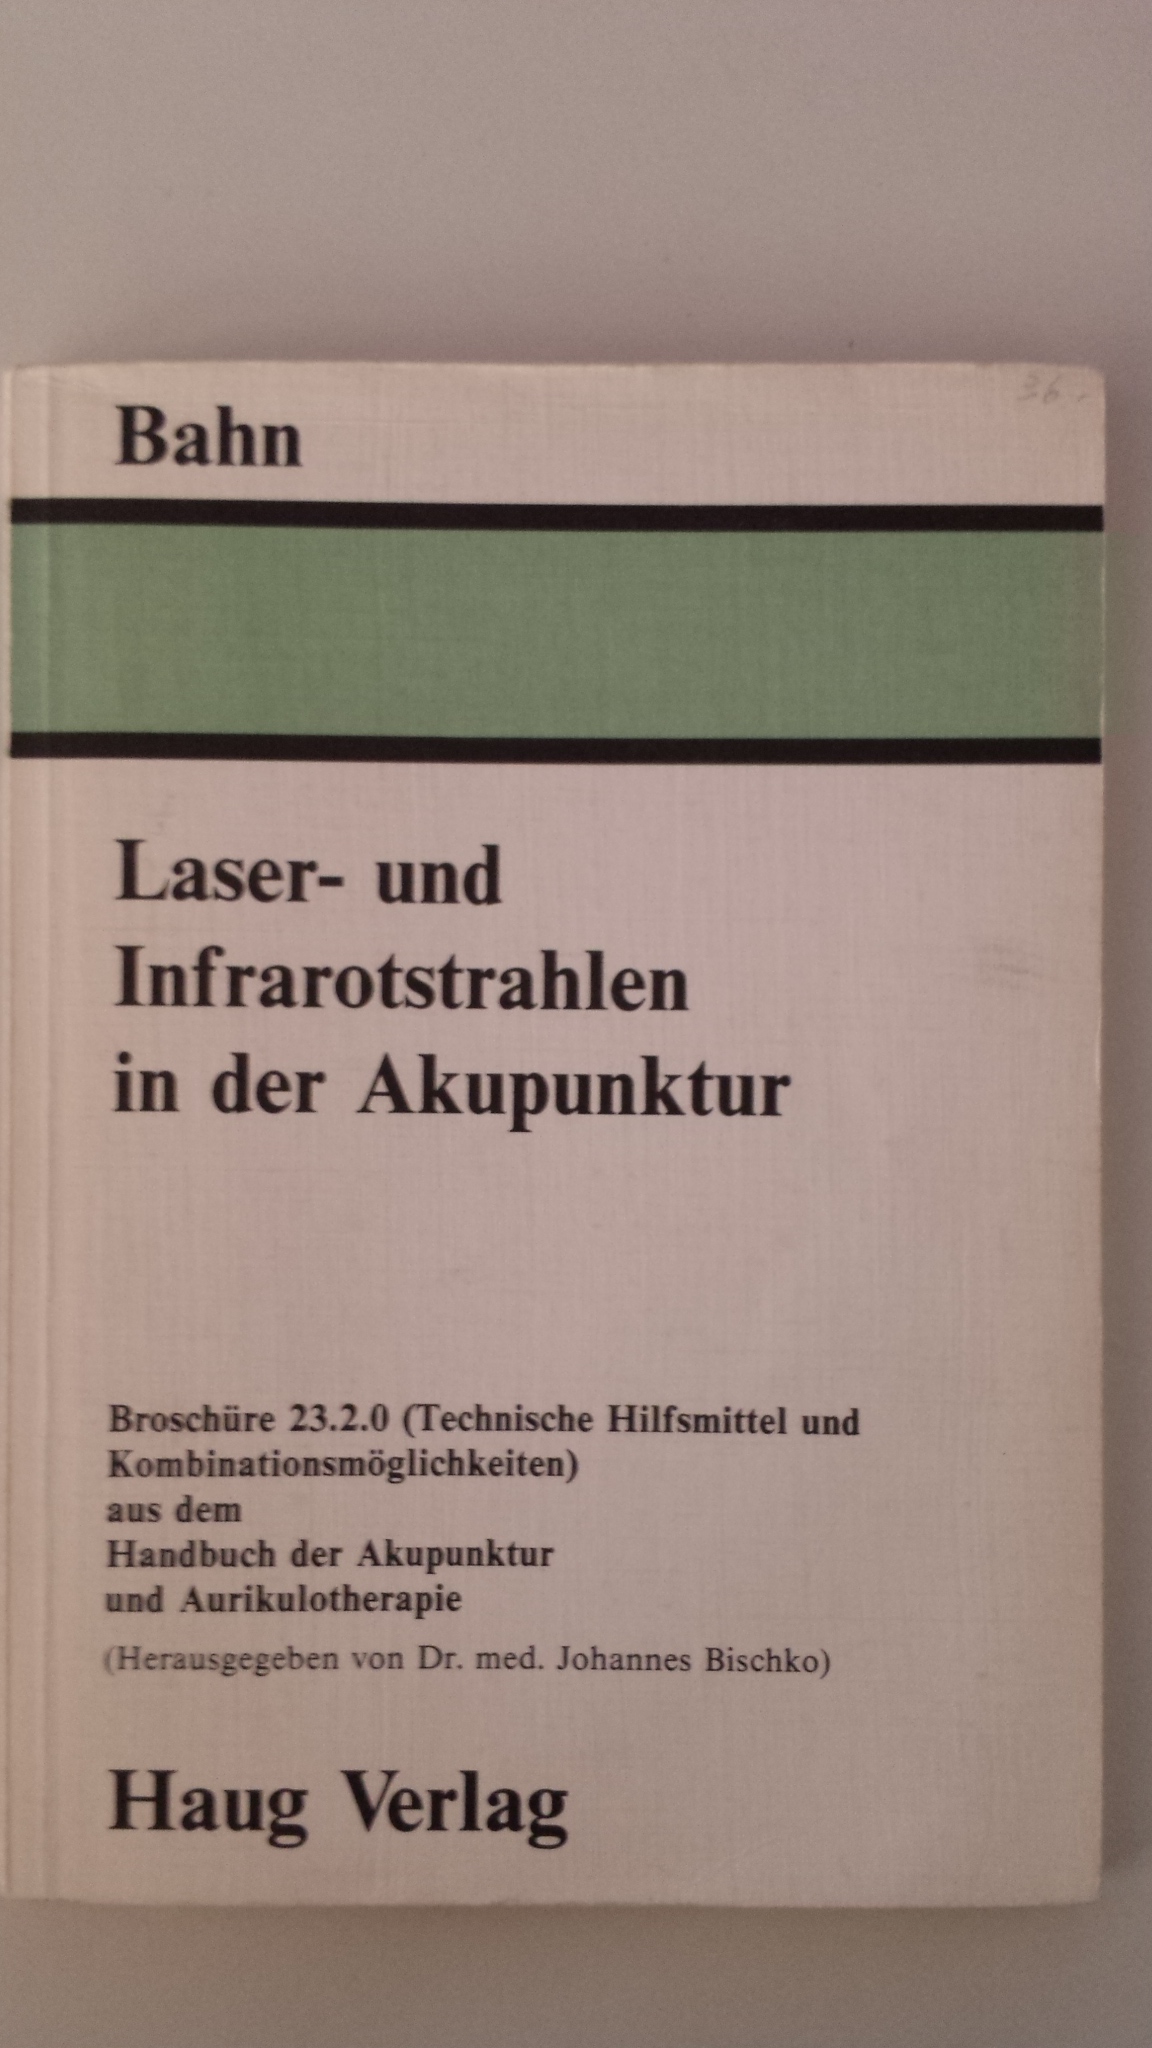 Buch: B149 Laser- und Infrarotstrahlen in der Akupunktur, Broschüre 23.2.0.